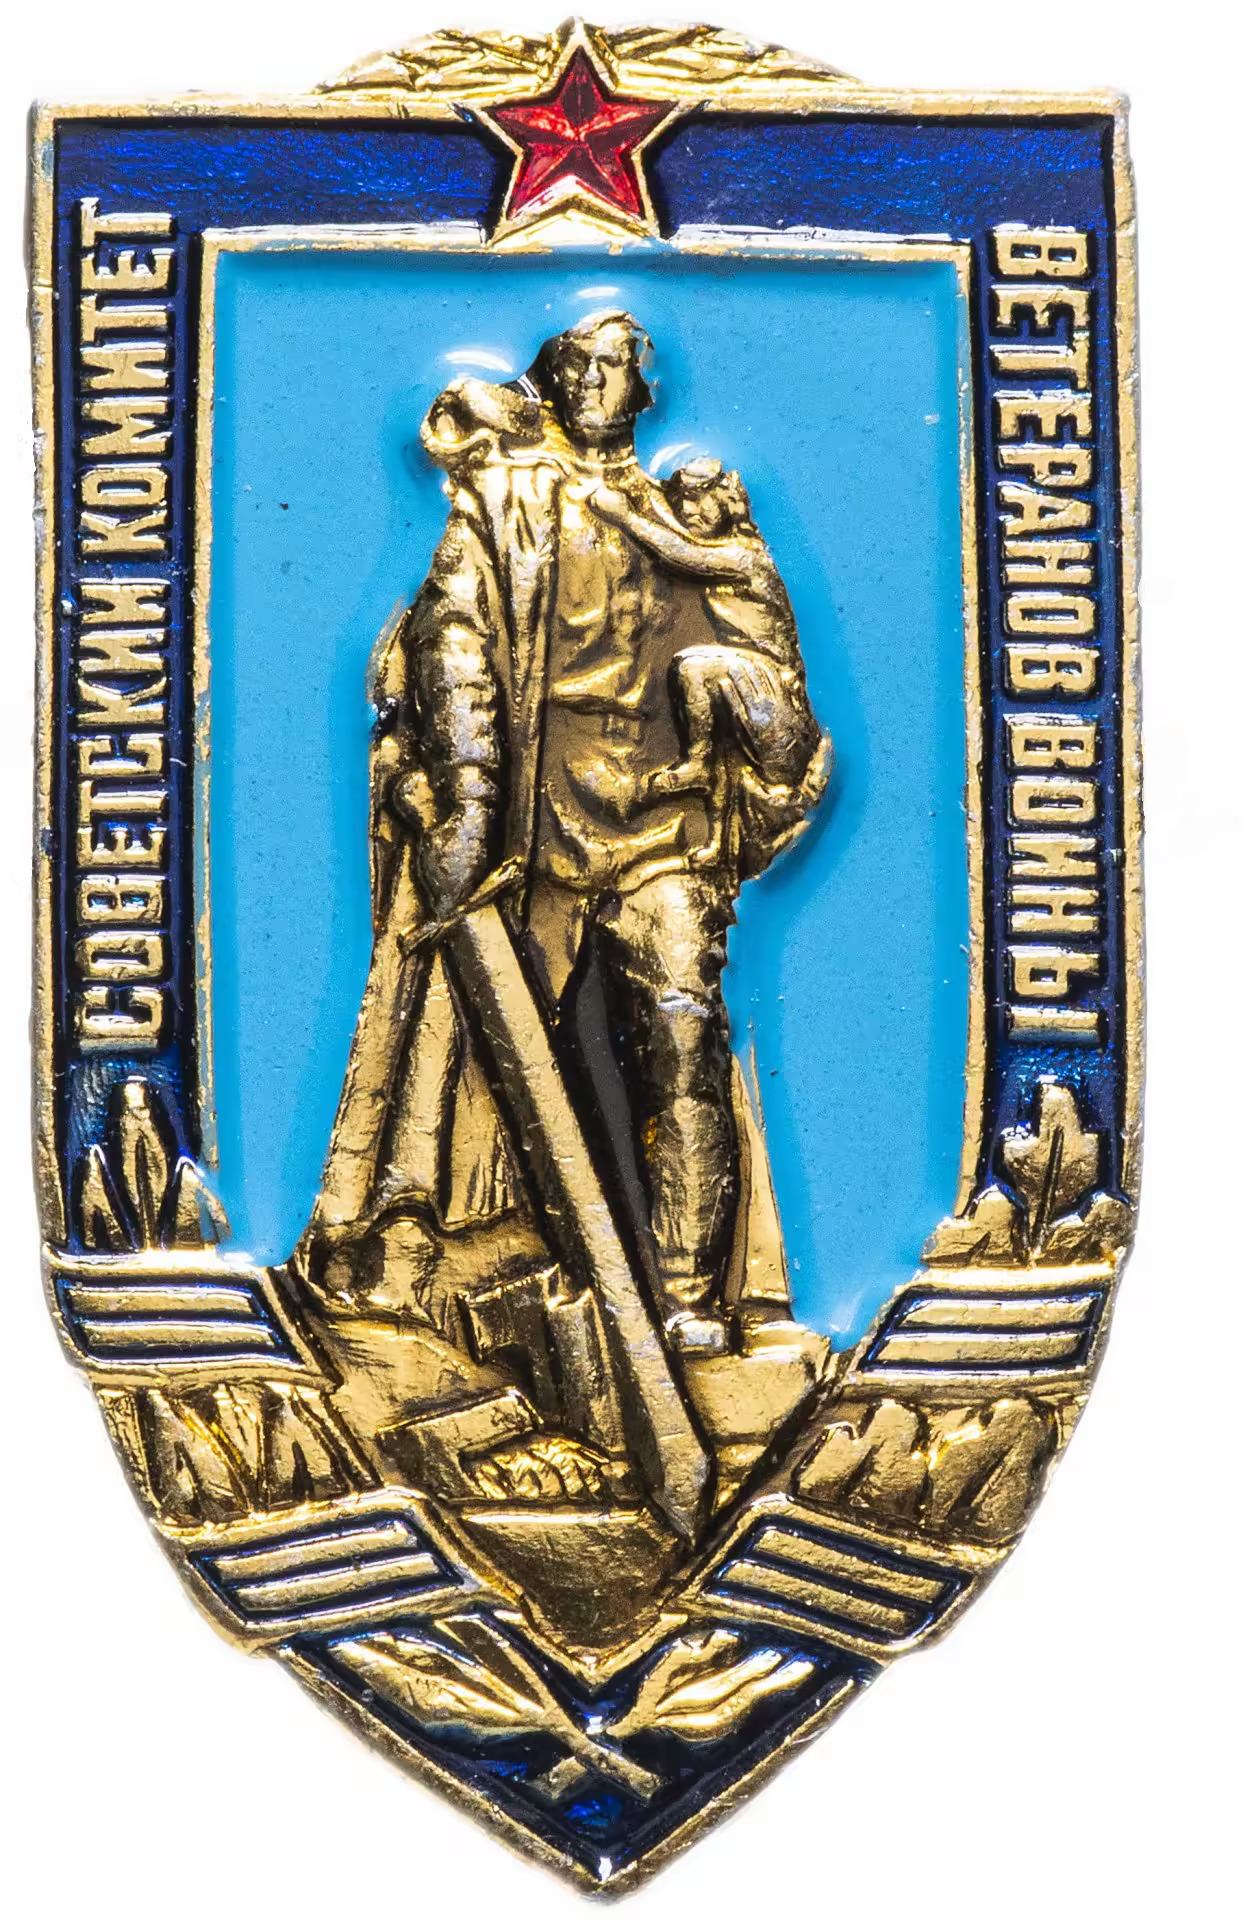 Советский комитет ветеранов войны значок